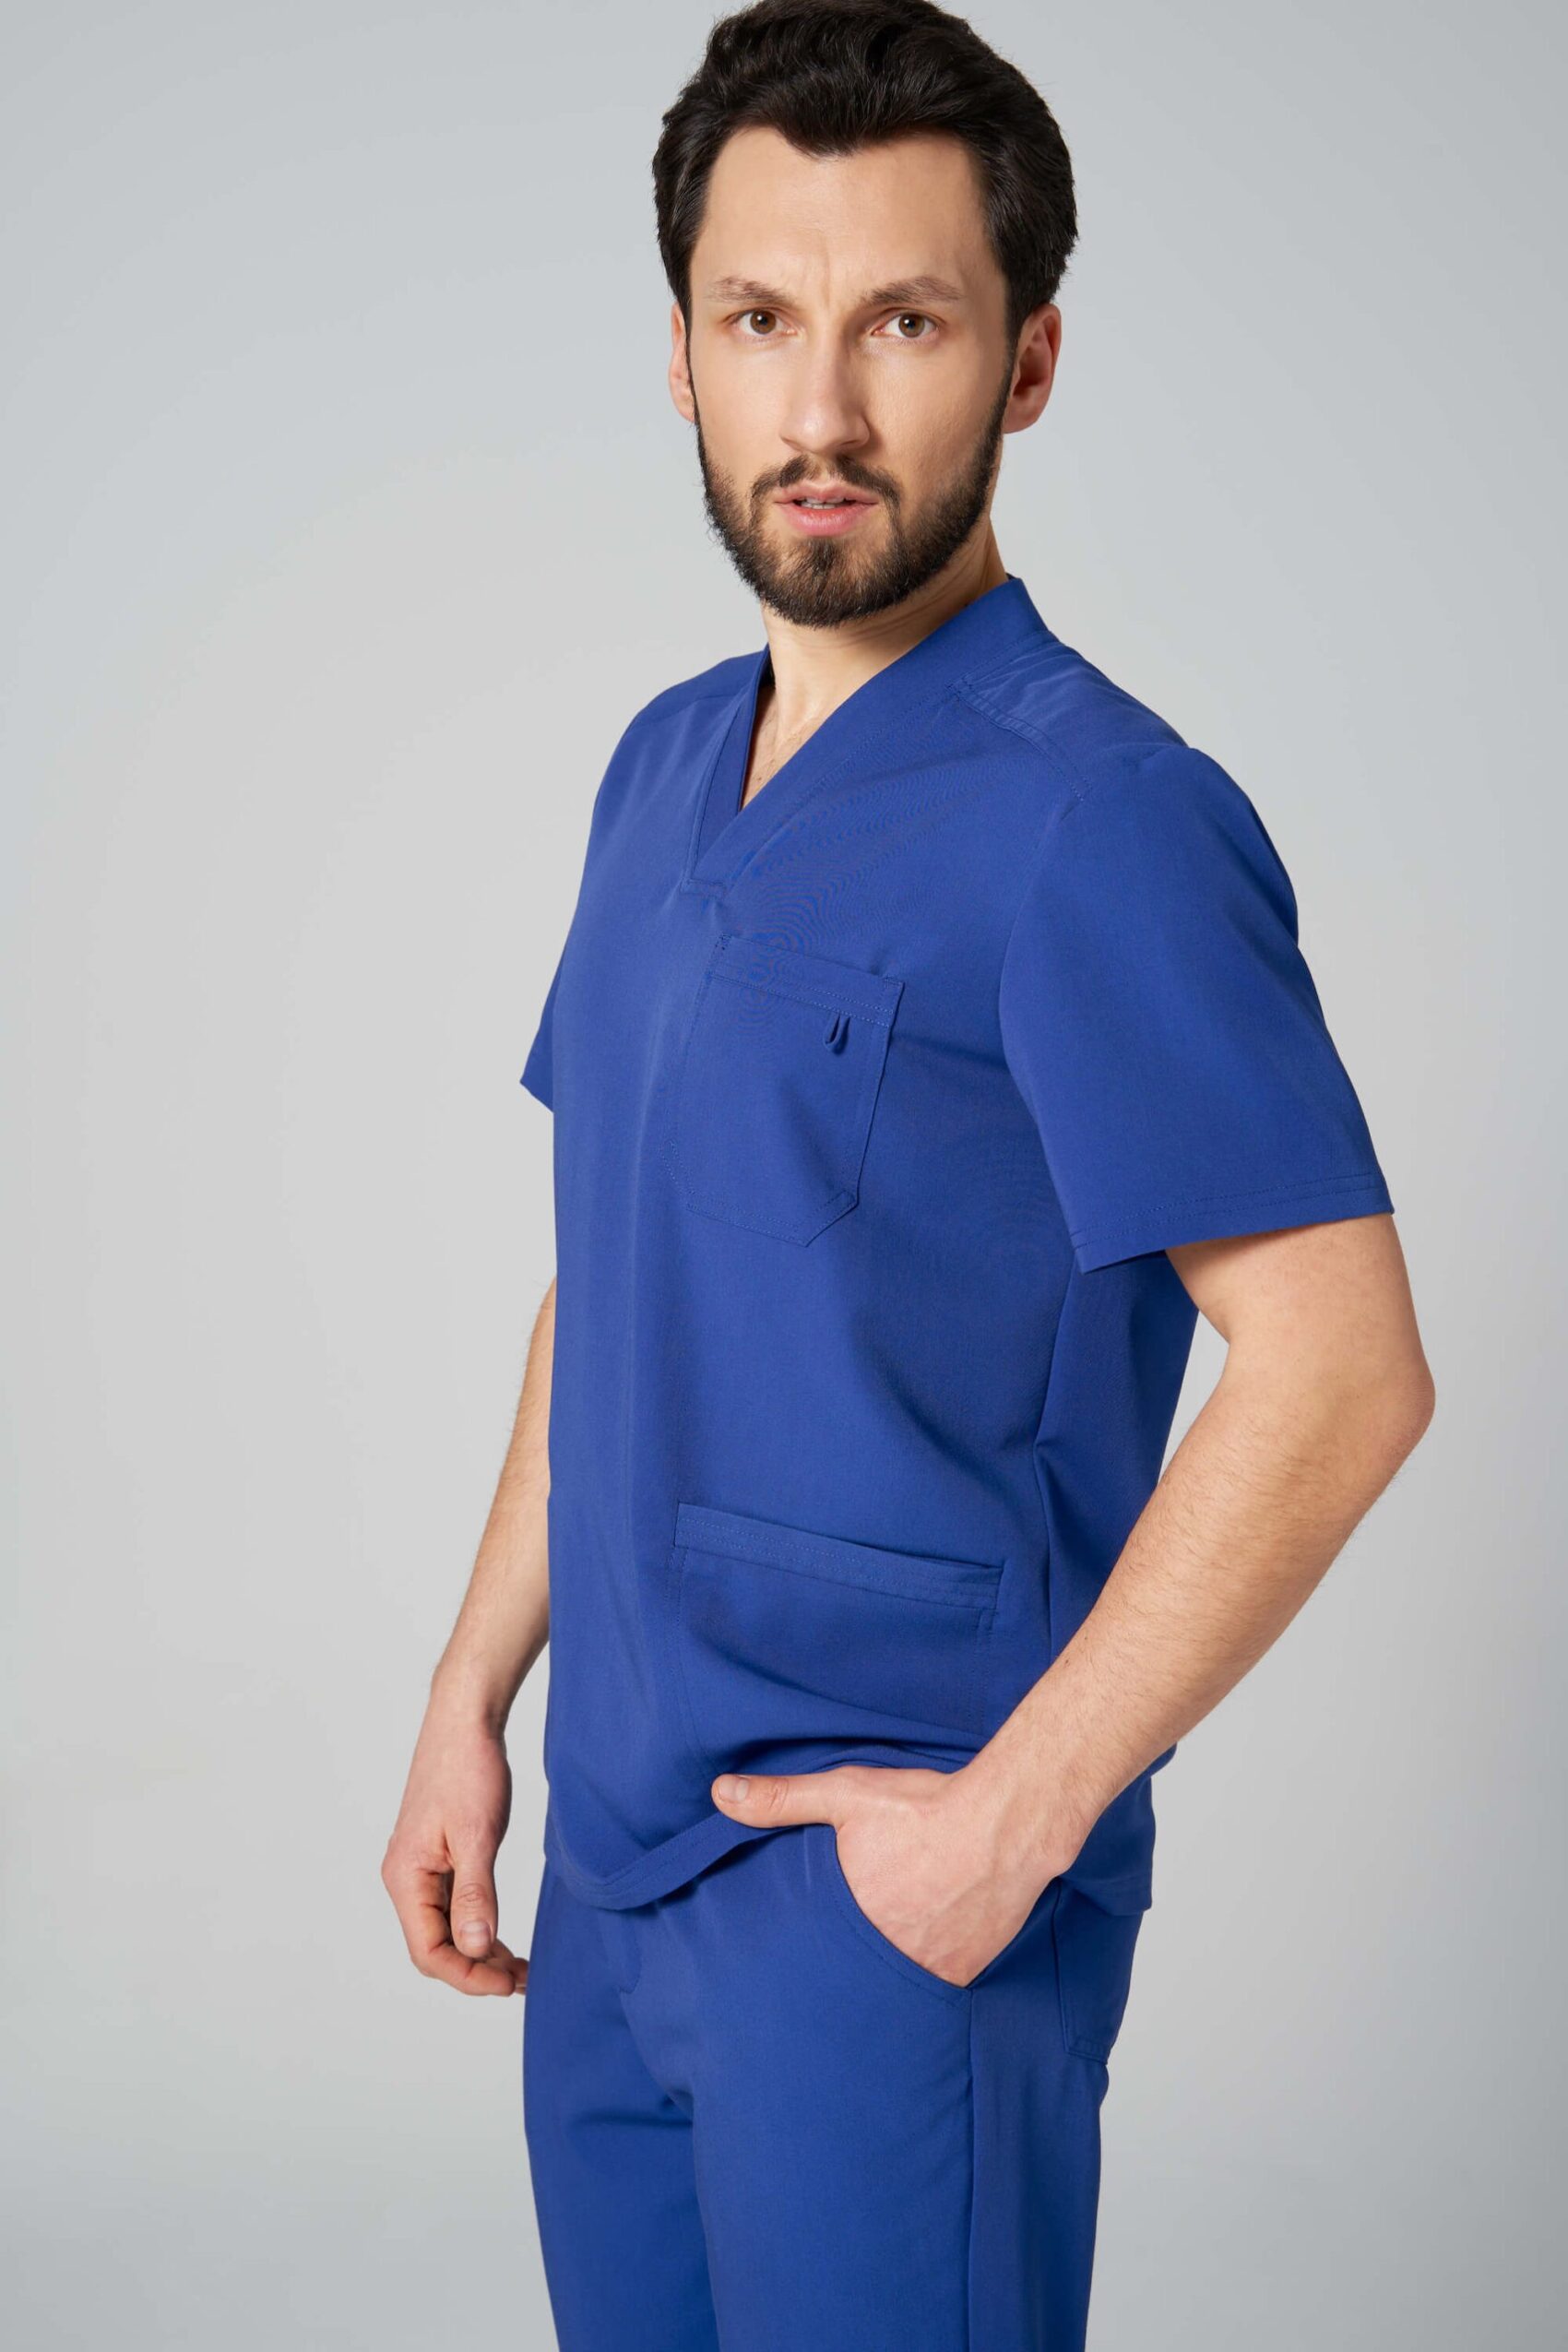 Bluza medyczna męska AXIS healing blue